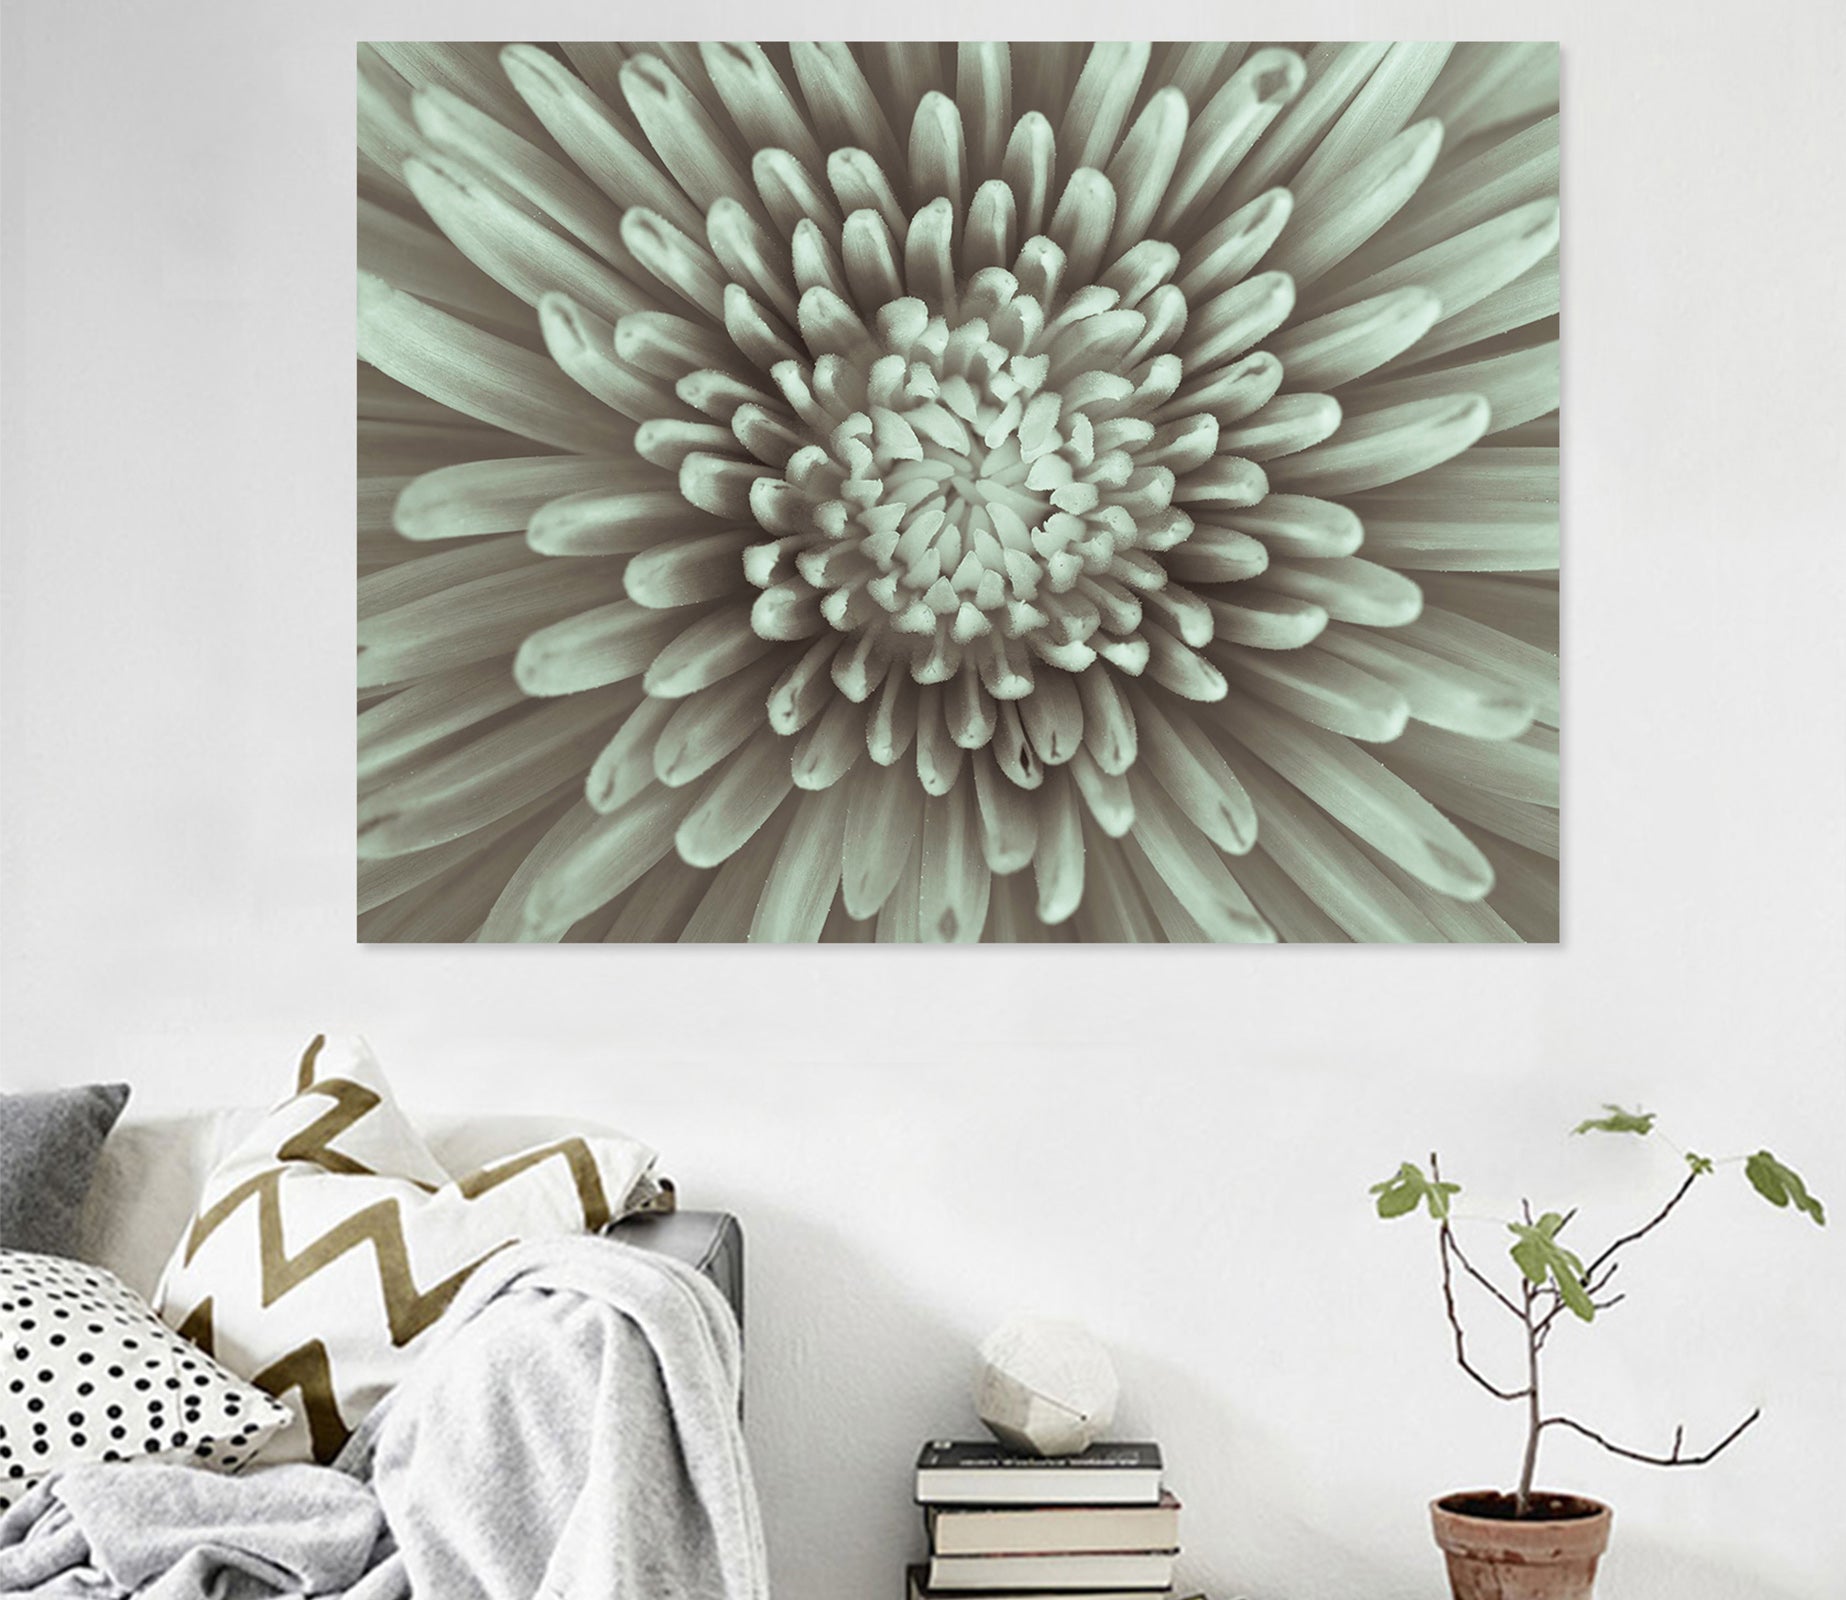 3D Chrysanthemum 013 Assaf Frank Wall Sticker